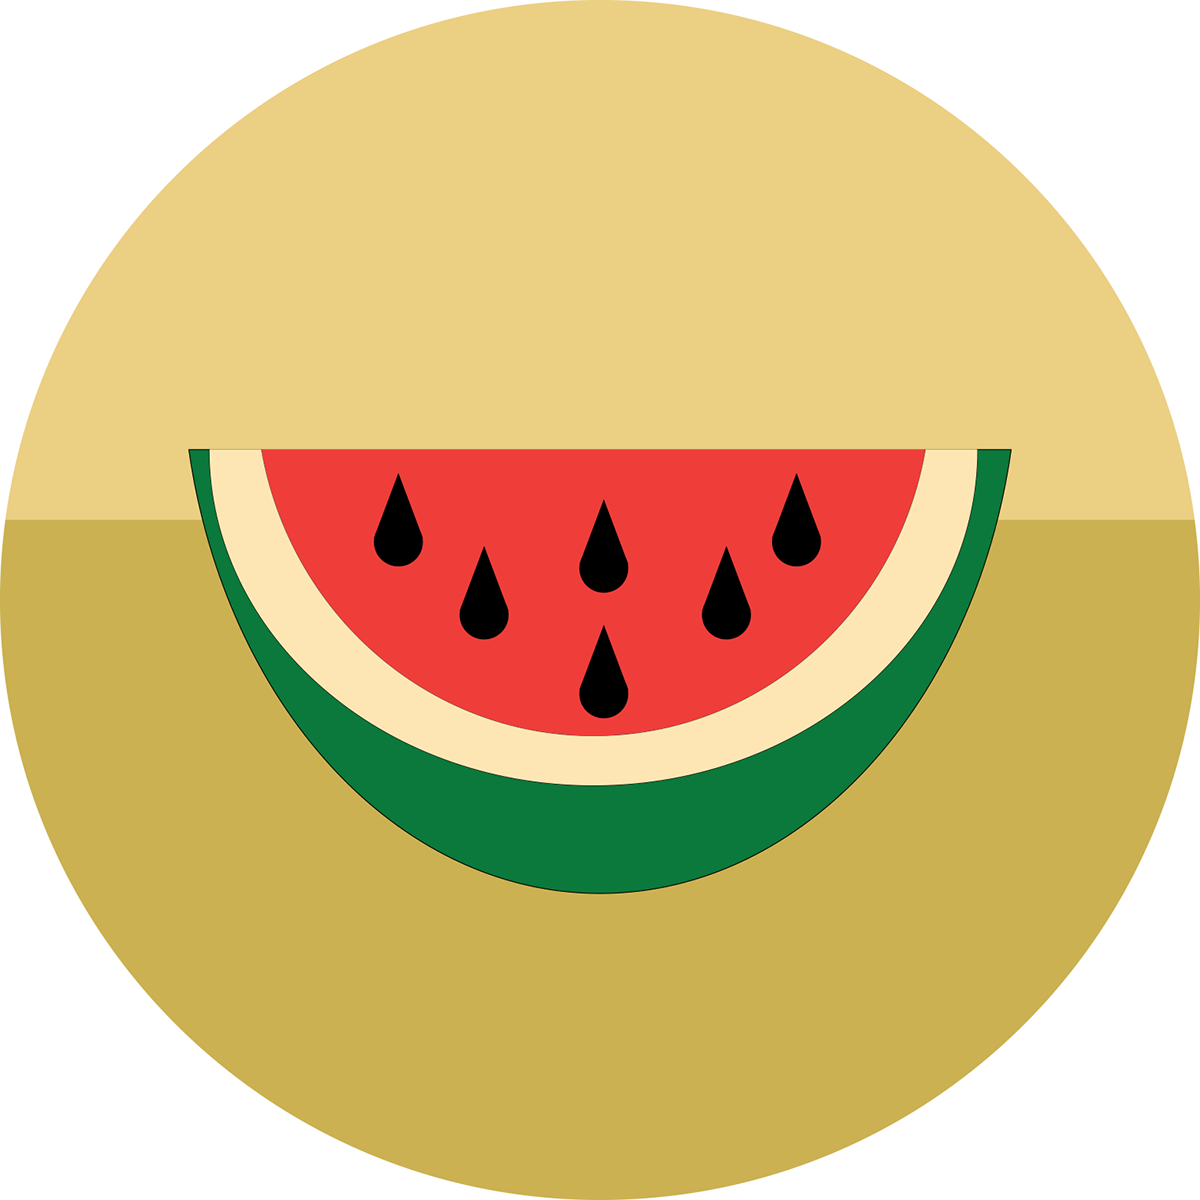 Sketch Watermelon - Watermelon (1200x1200)